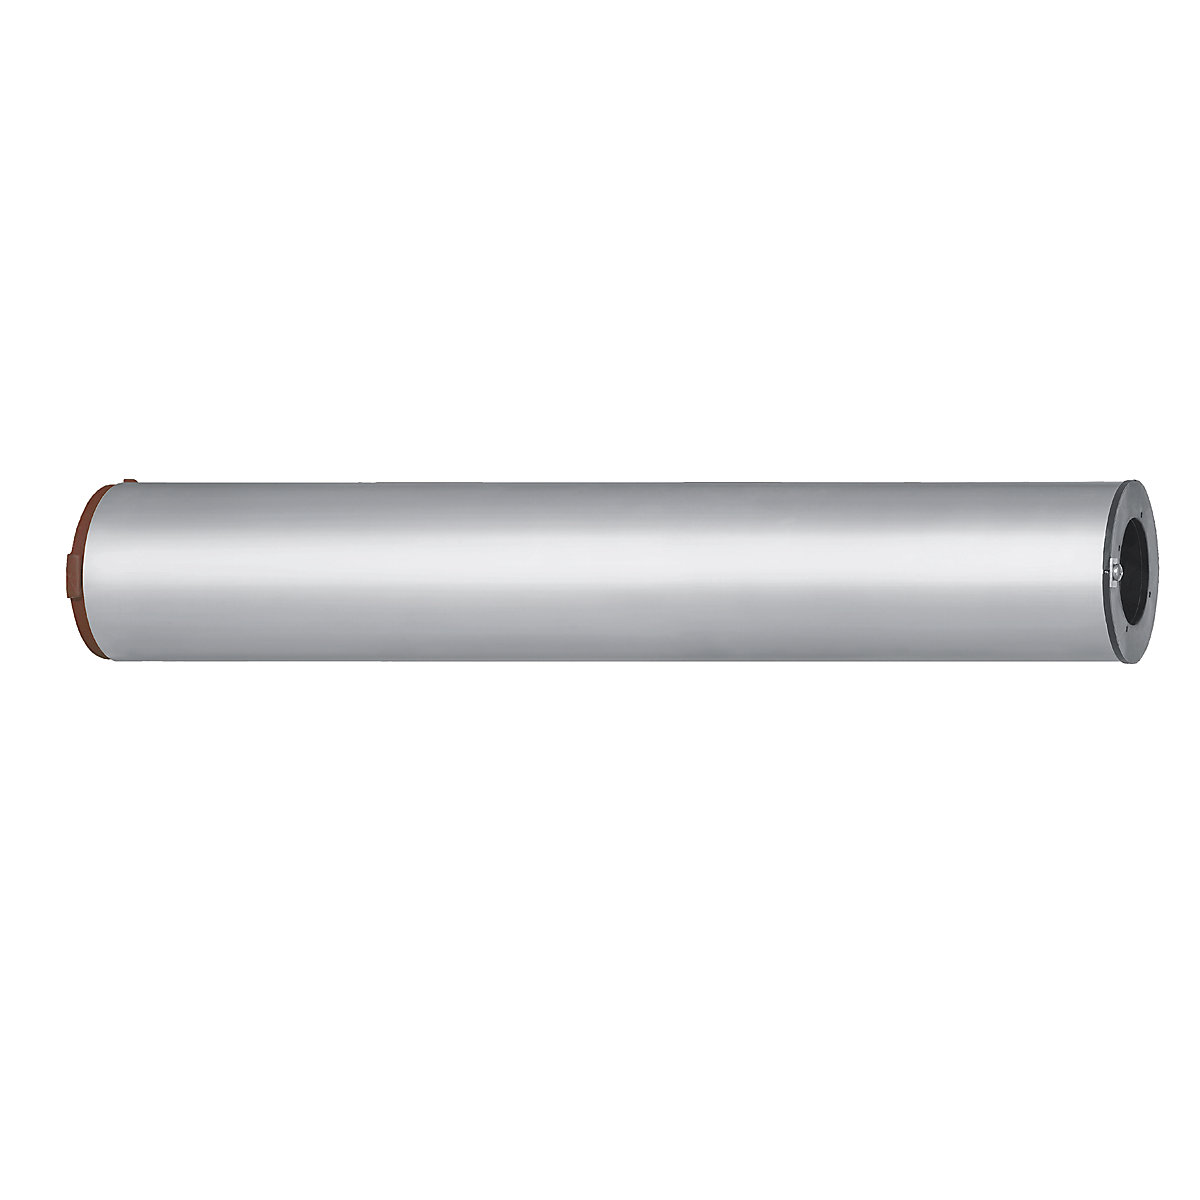 PIRAT aluminium flag pole – Mannus (Product illustration 3)-2